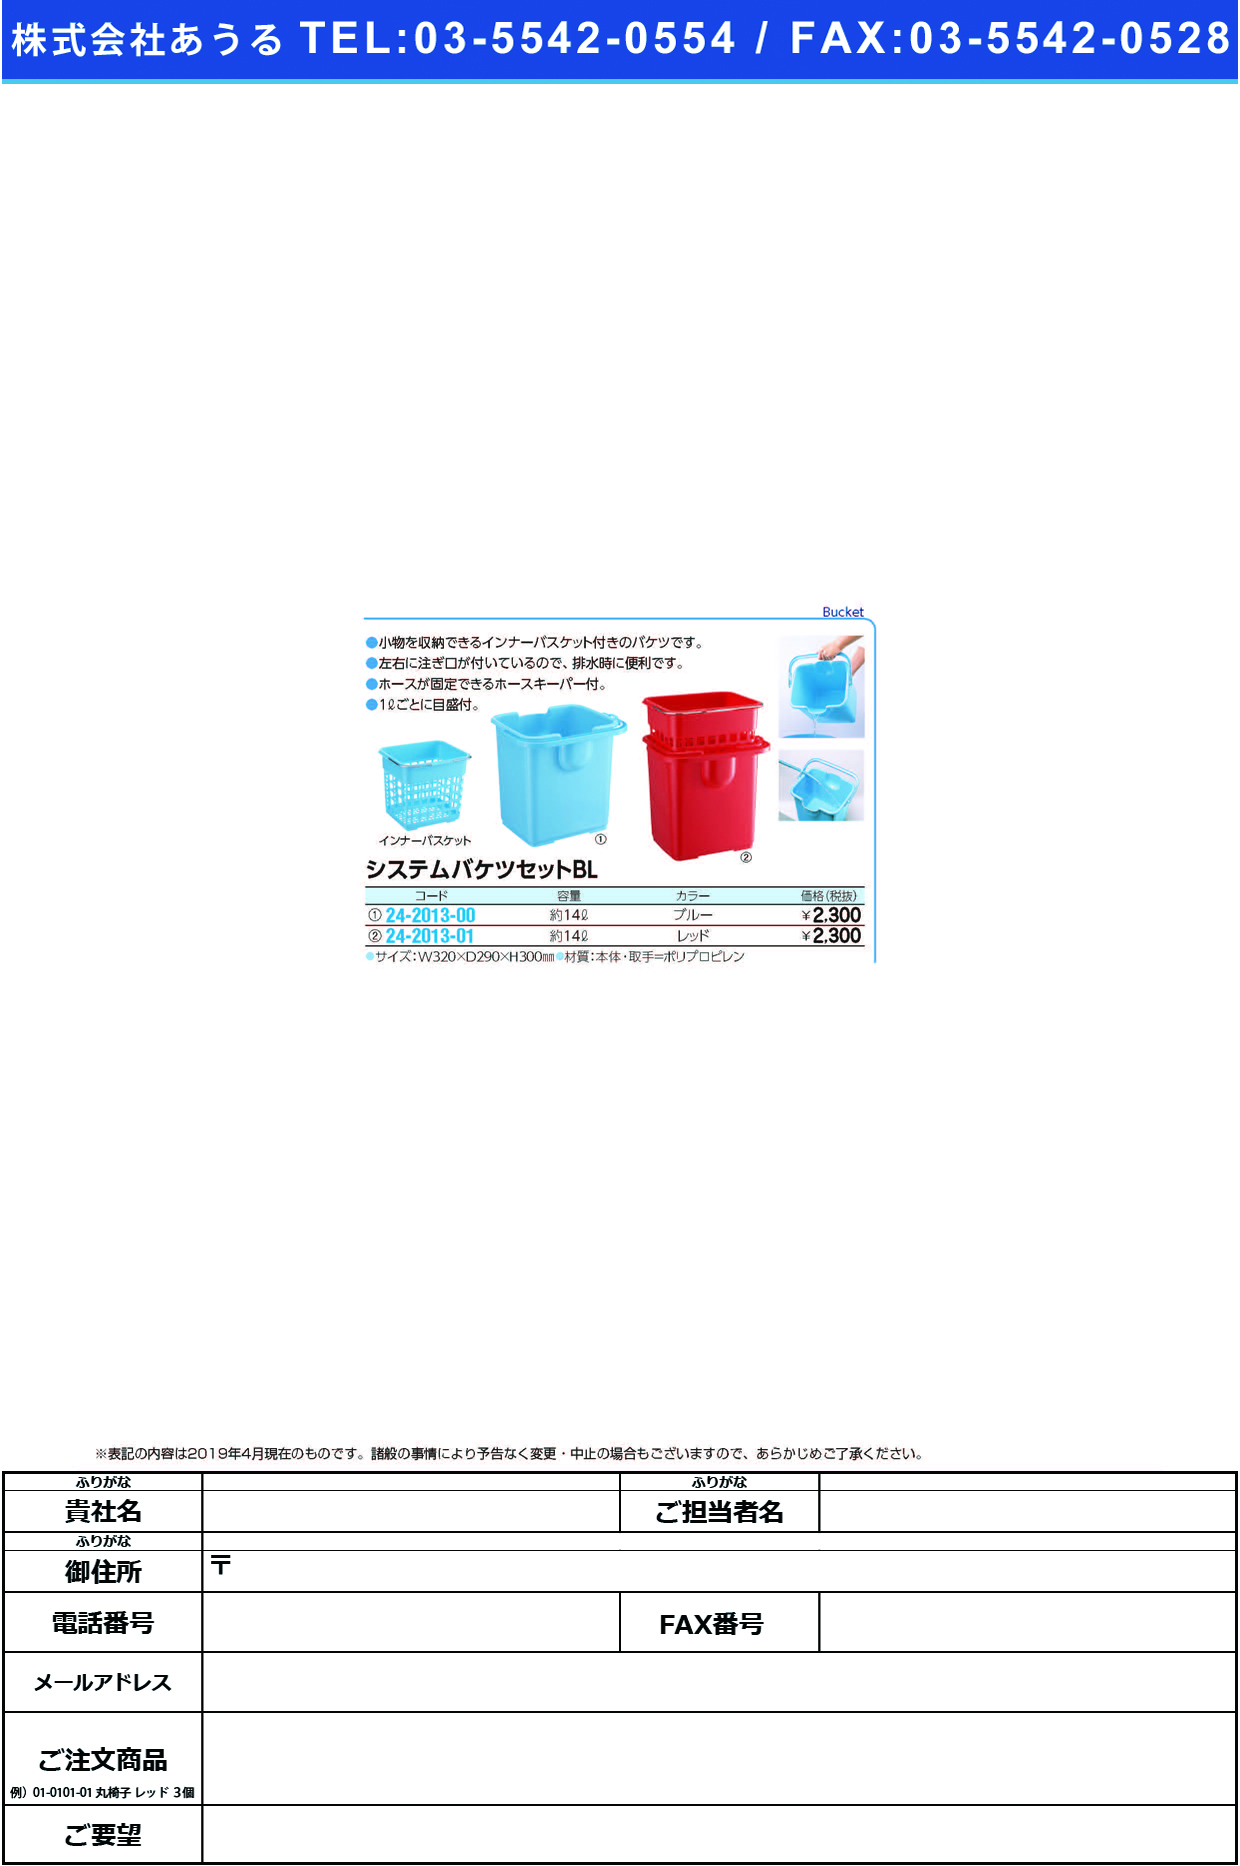 (24-2013-01)システムバケツセットＲ CL685-000X-MB(14L) ｼｽﾃﾑﾊﾞｹﾂｾｯﾄR(山崎産業)【1組単位】【2019年カタログ商品】